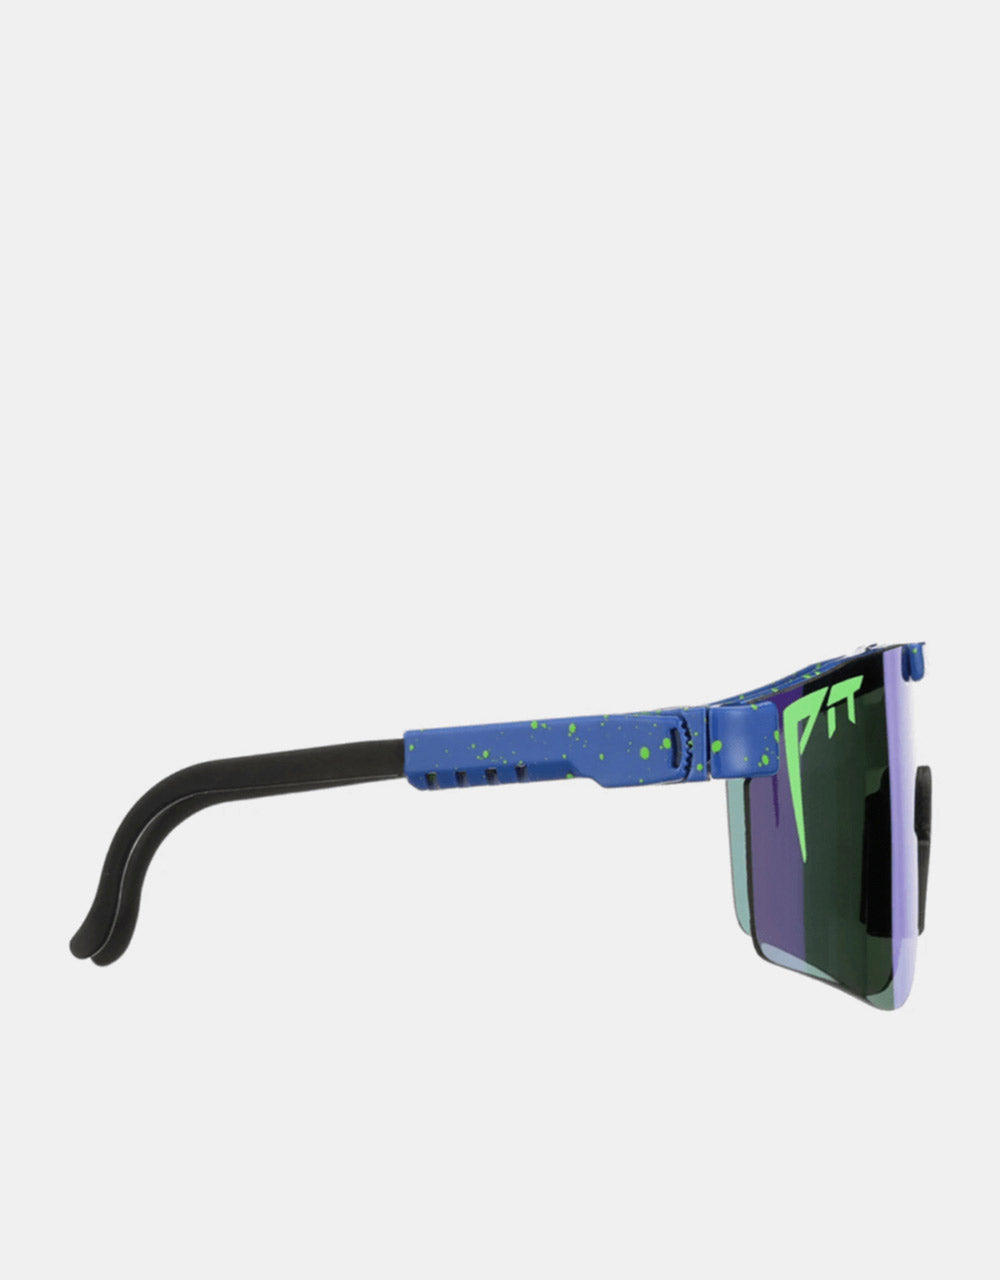 Pit Viper Leonardo Double Wide Sunglasses - Blue Revo Mirror